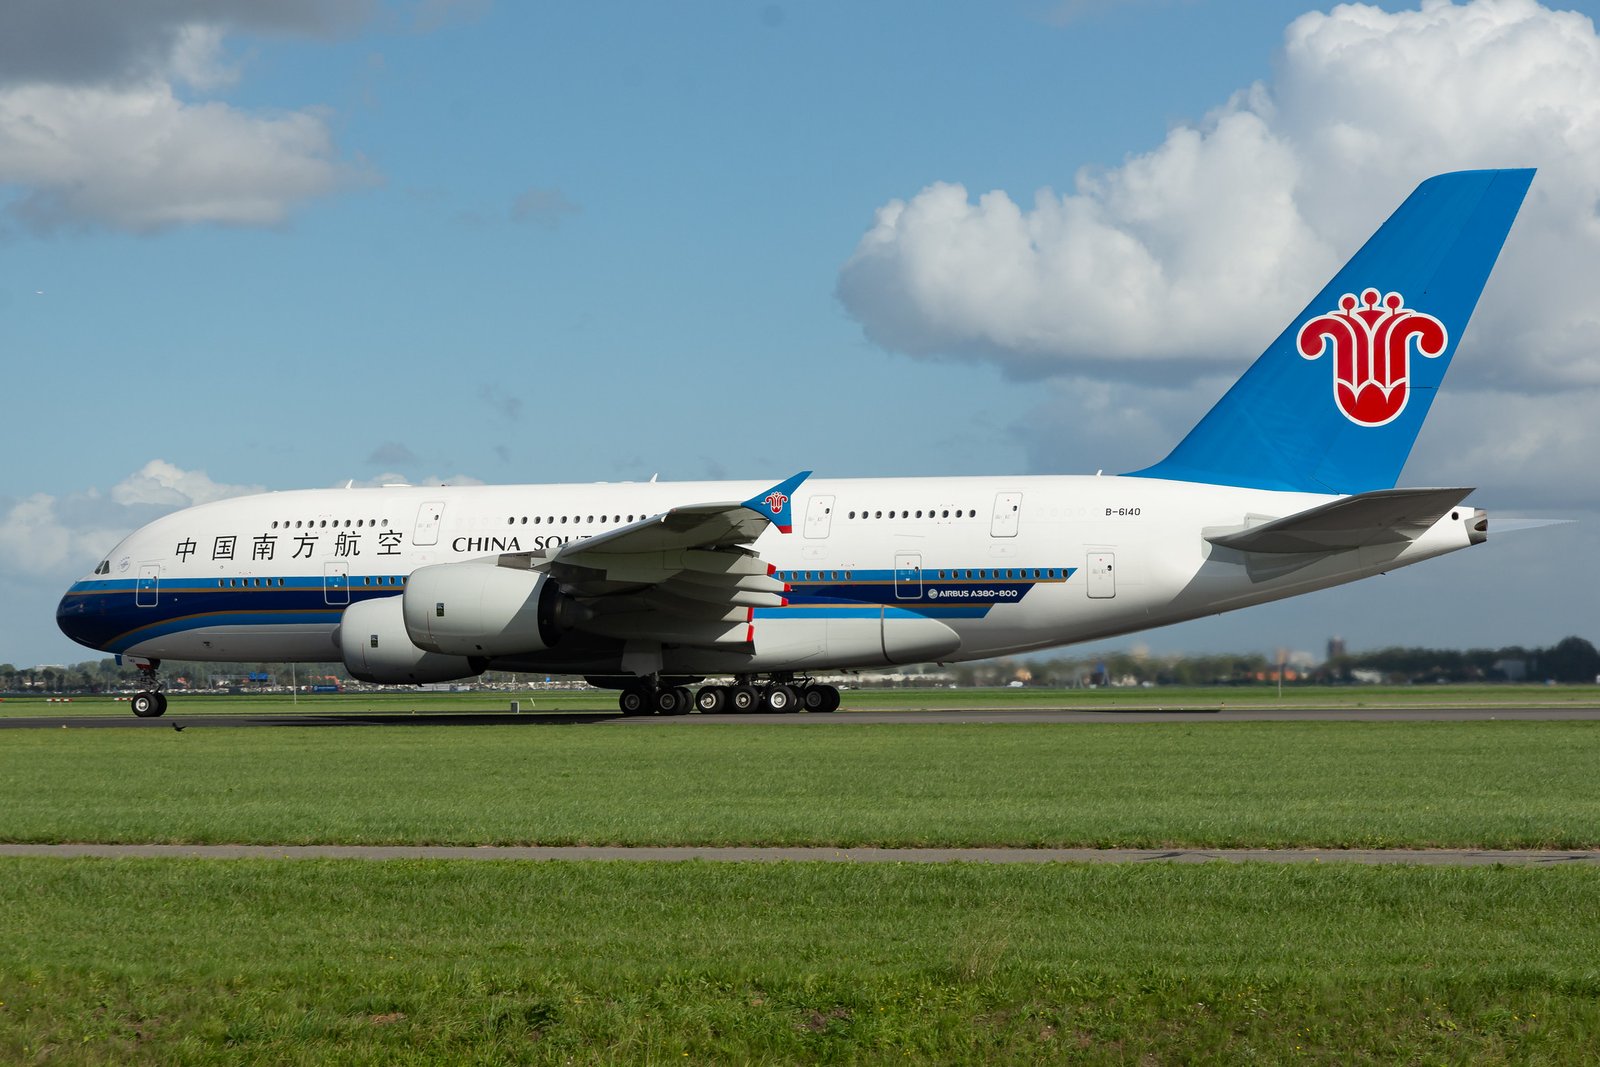 El A380 bajo su registro original en el aeropuerto de Schiphol. Foto: Gerard van der Schaaf